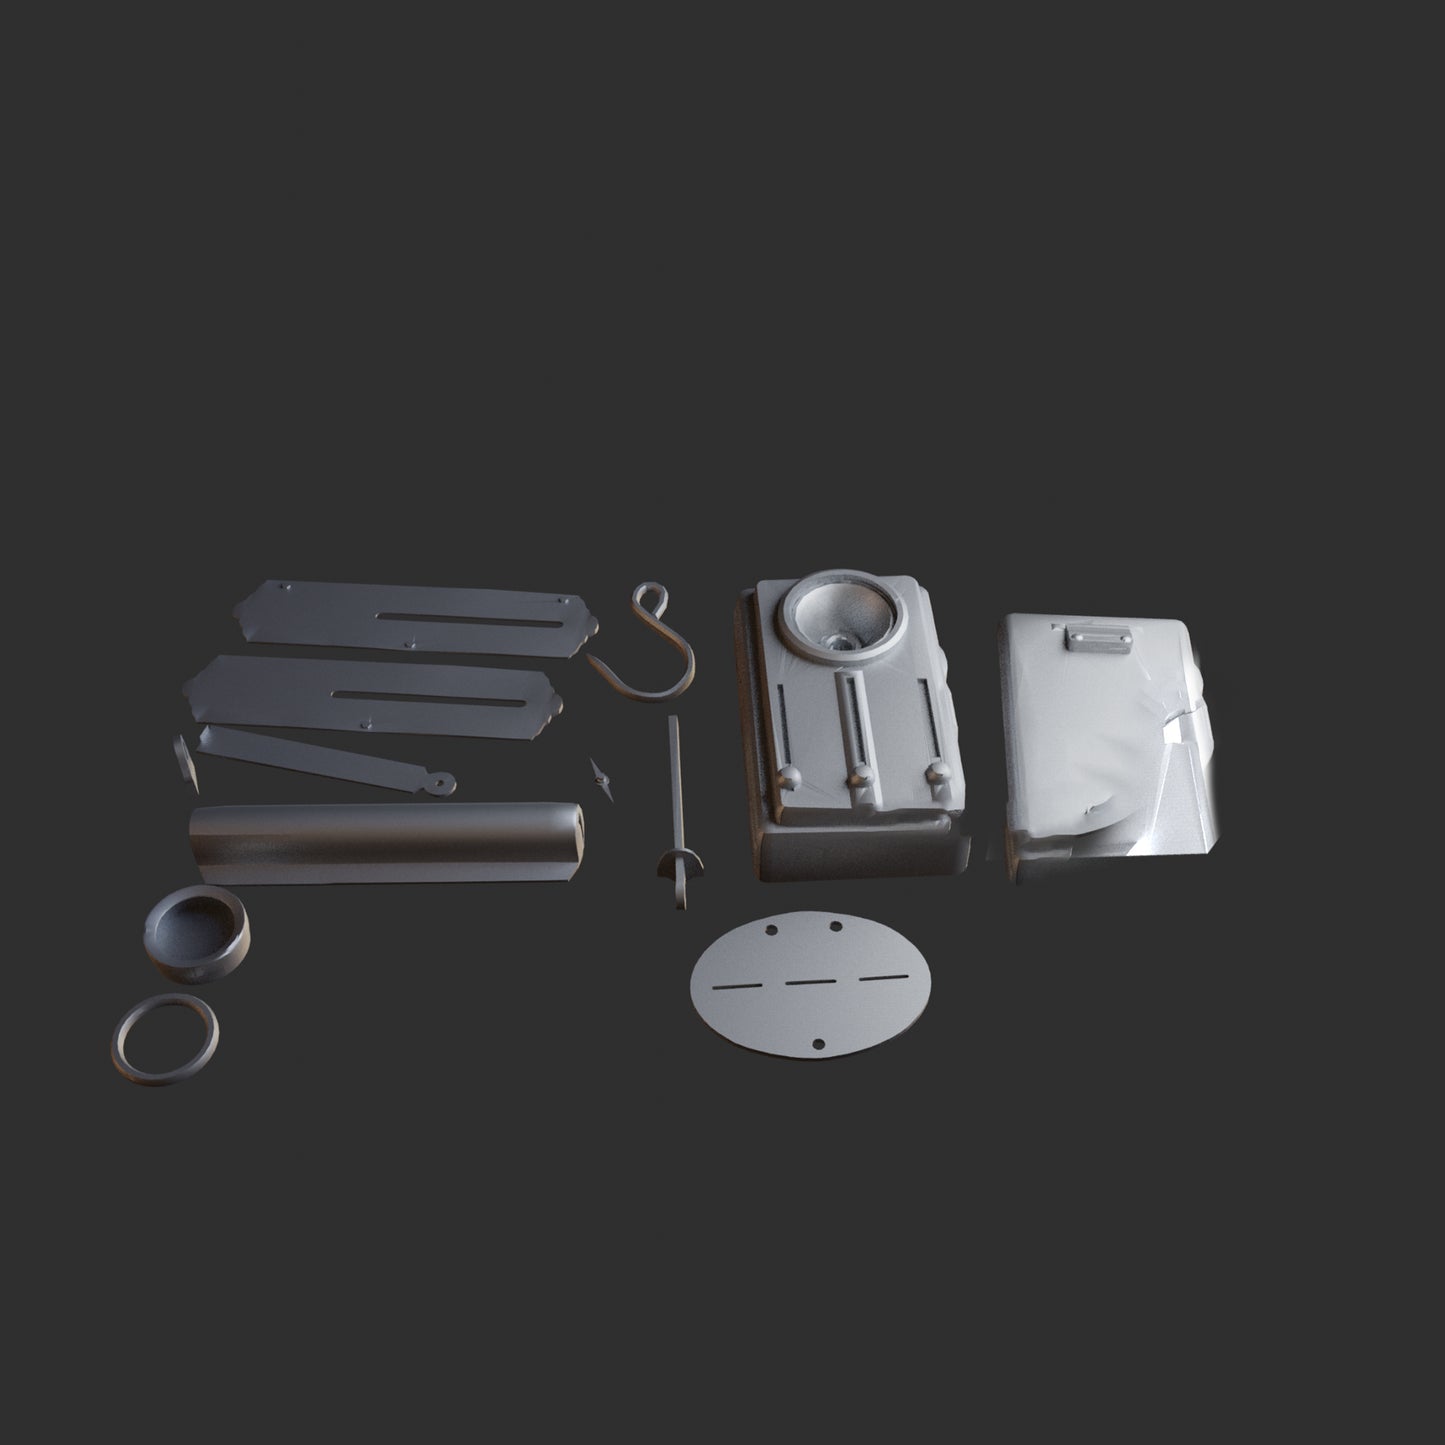 Karl Heisenberg Accessories - Digital 3D Model and Physical 3D Printed Kit Options - Karl Heisenberg Cosplay